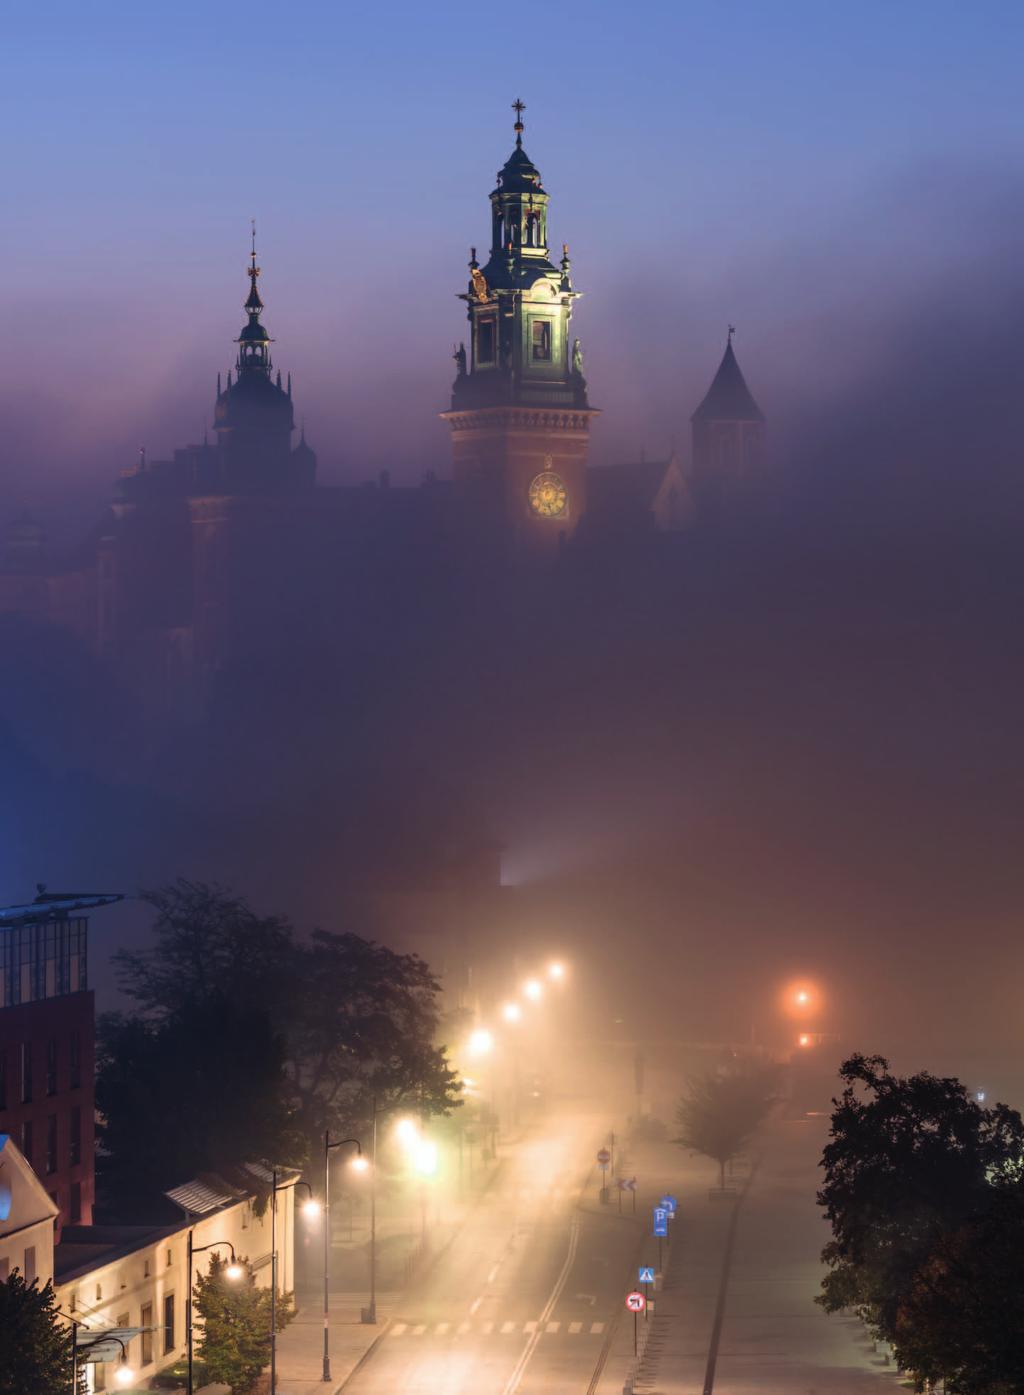 Osobliwa chmura mgły znad Wisły, która w kilka minut ukryła wawelskie wzgórze, pozostawiając widoczne jedynie trzy wieże katedry. W dole oświetlona ulica Powiśle. fot.